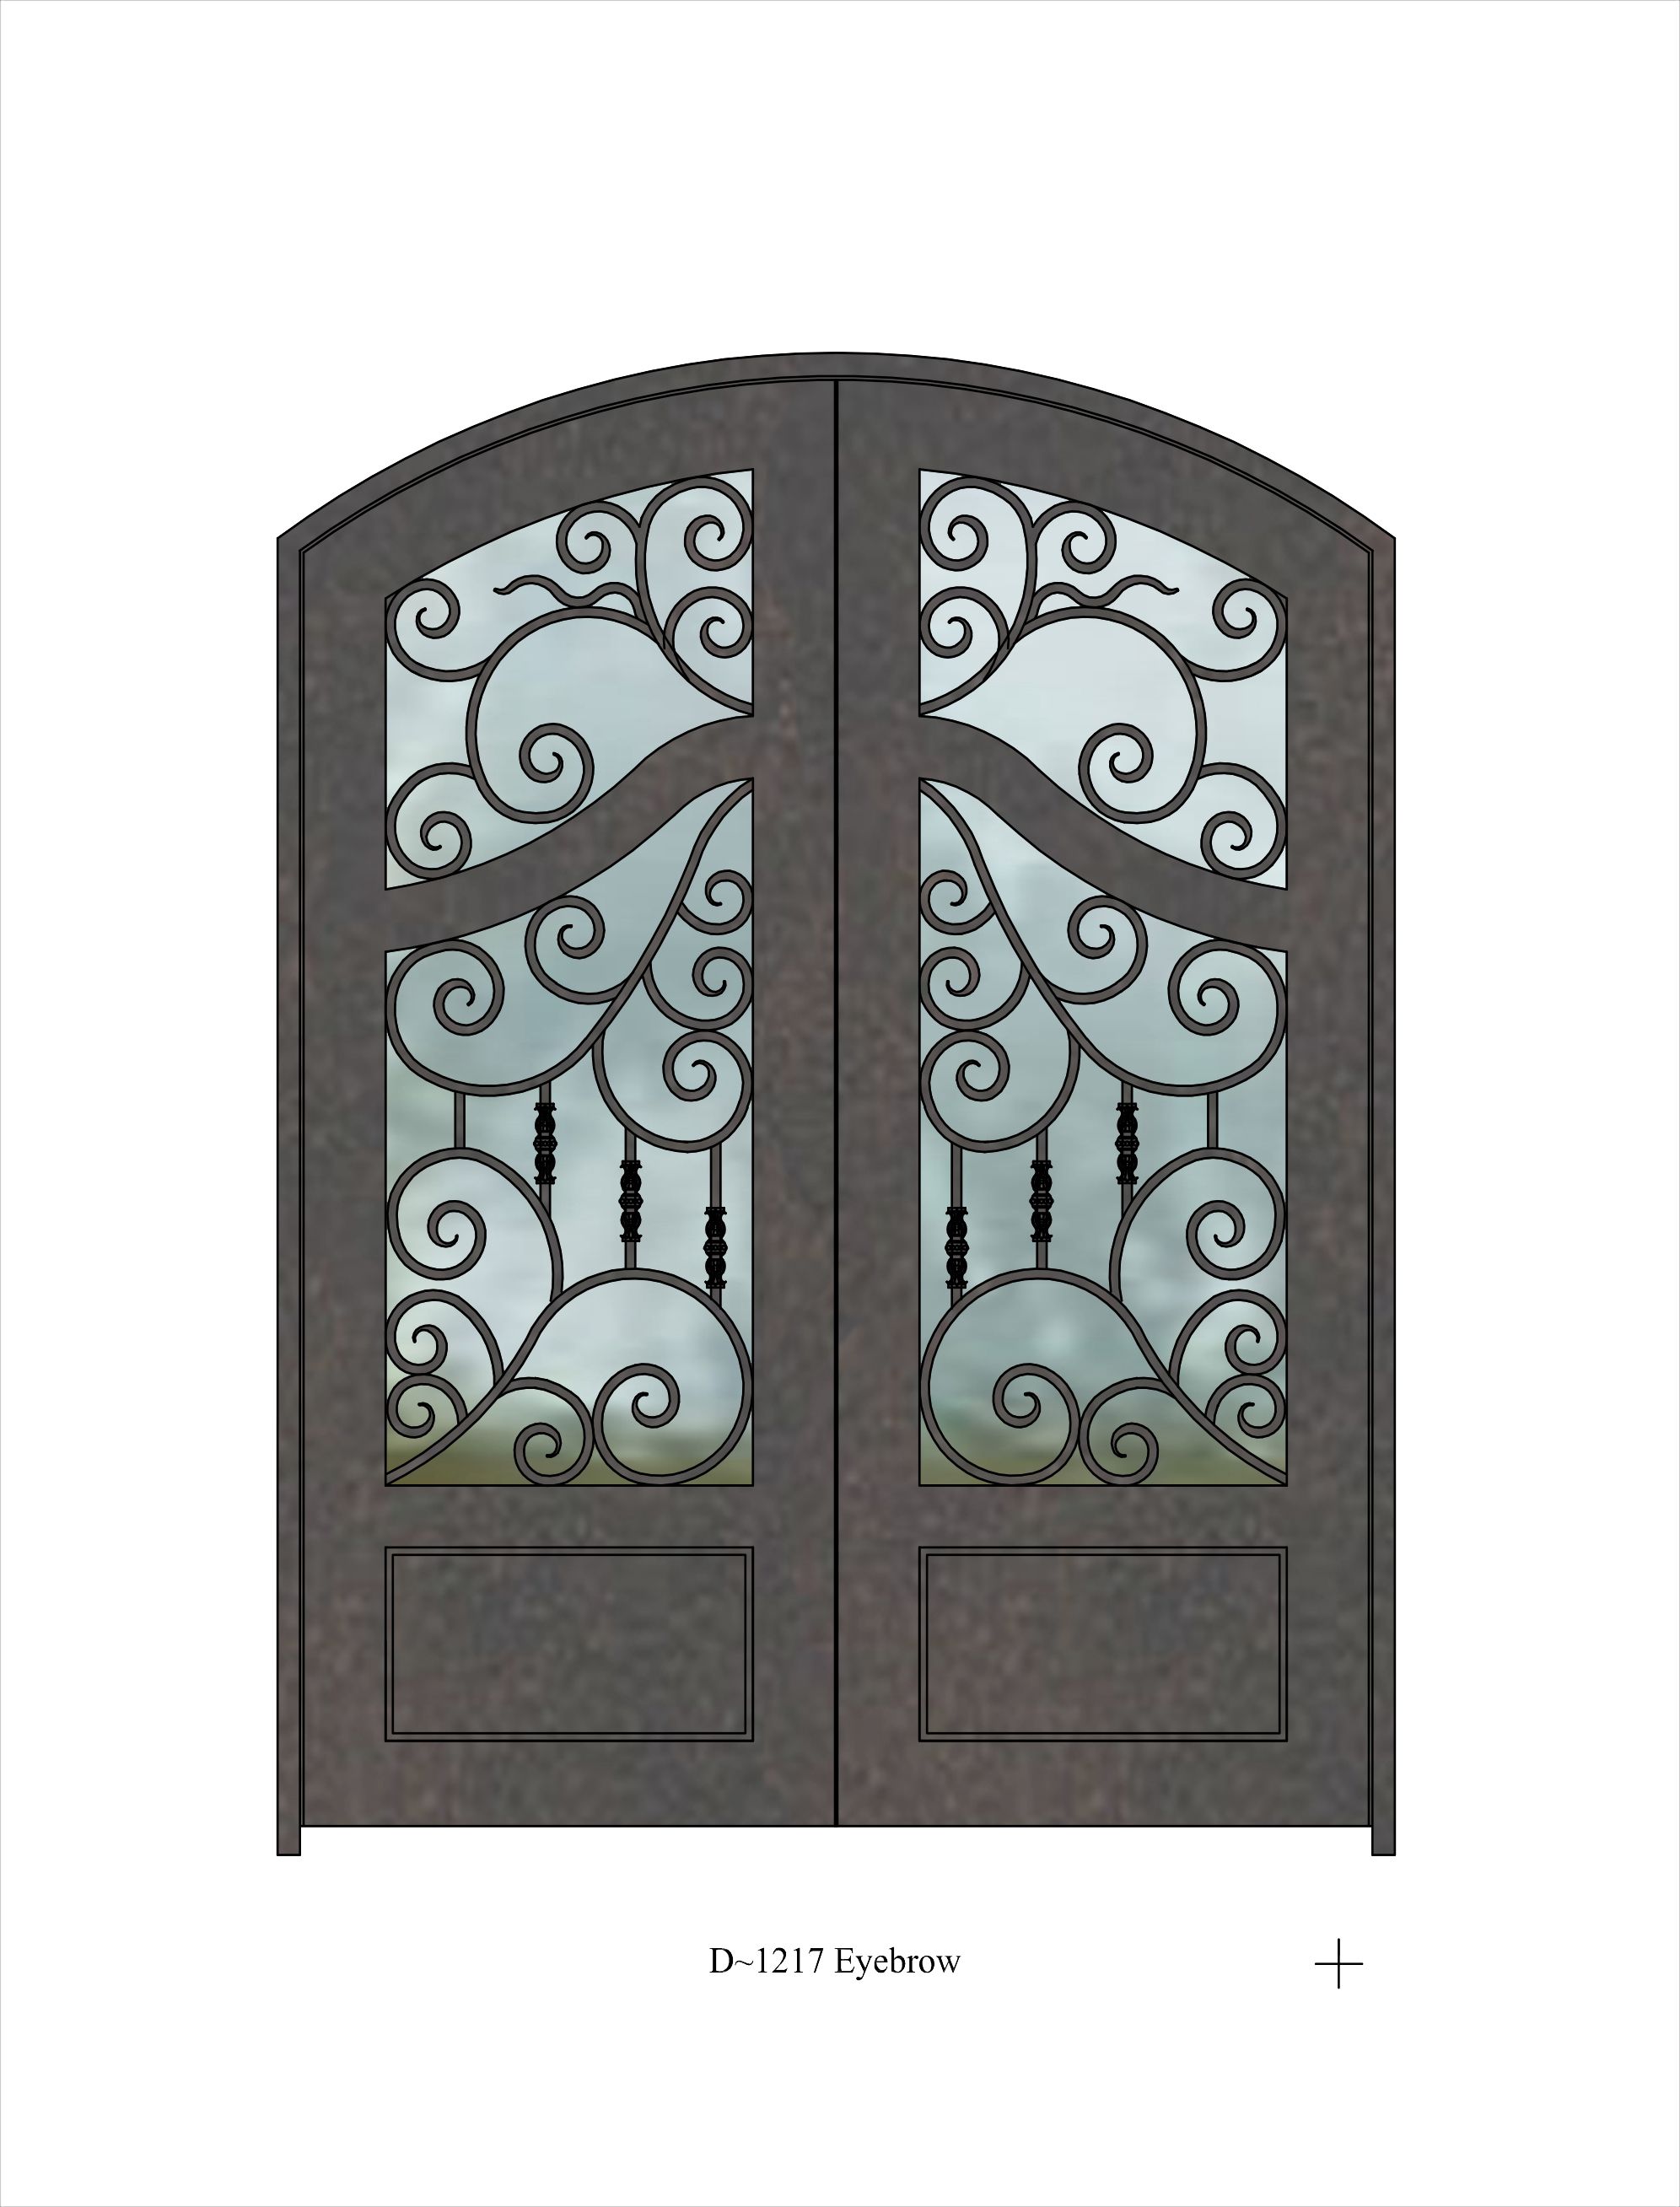 Eyebrow top door with intricate ironwork pattern over window